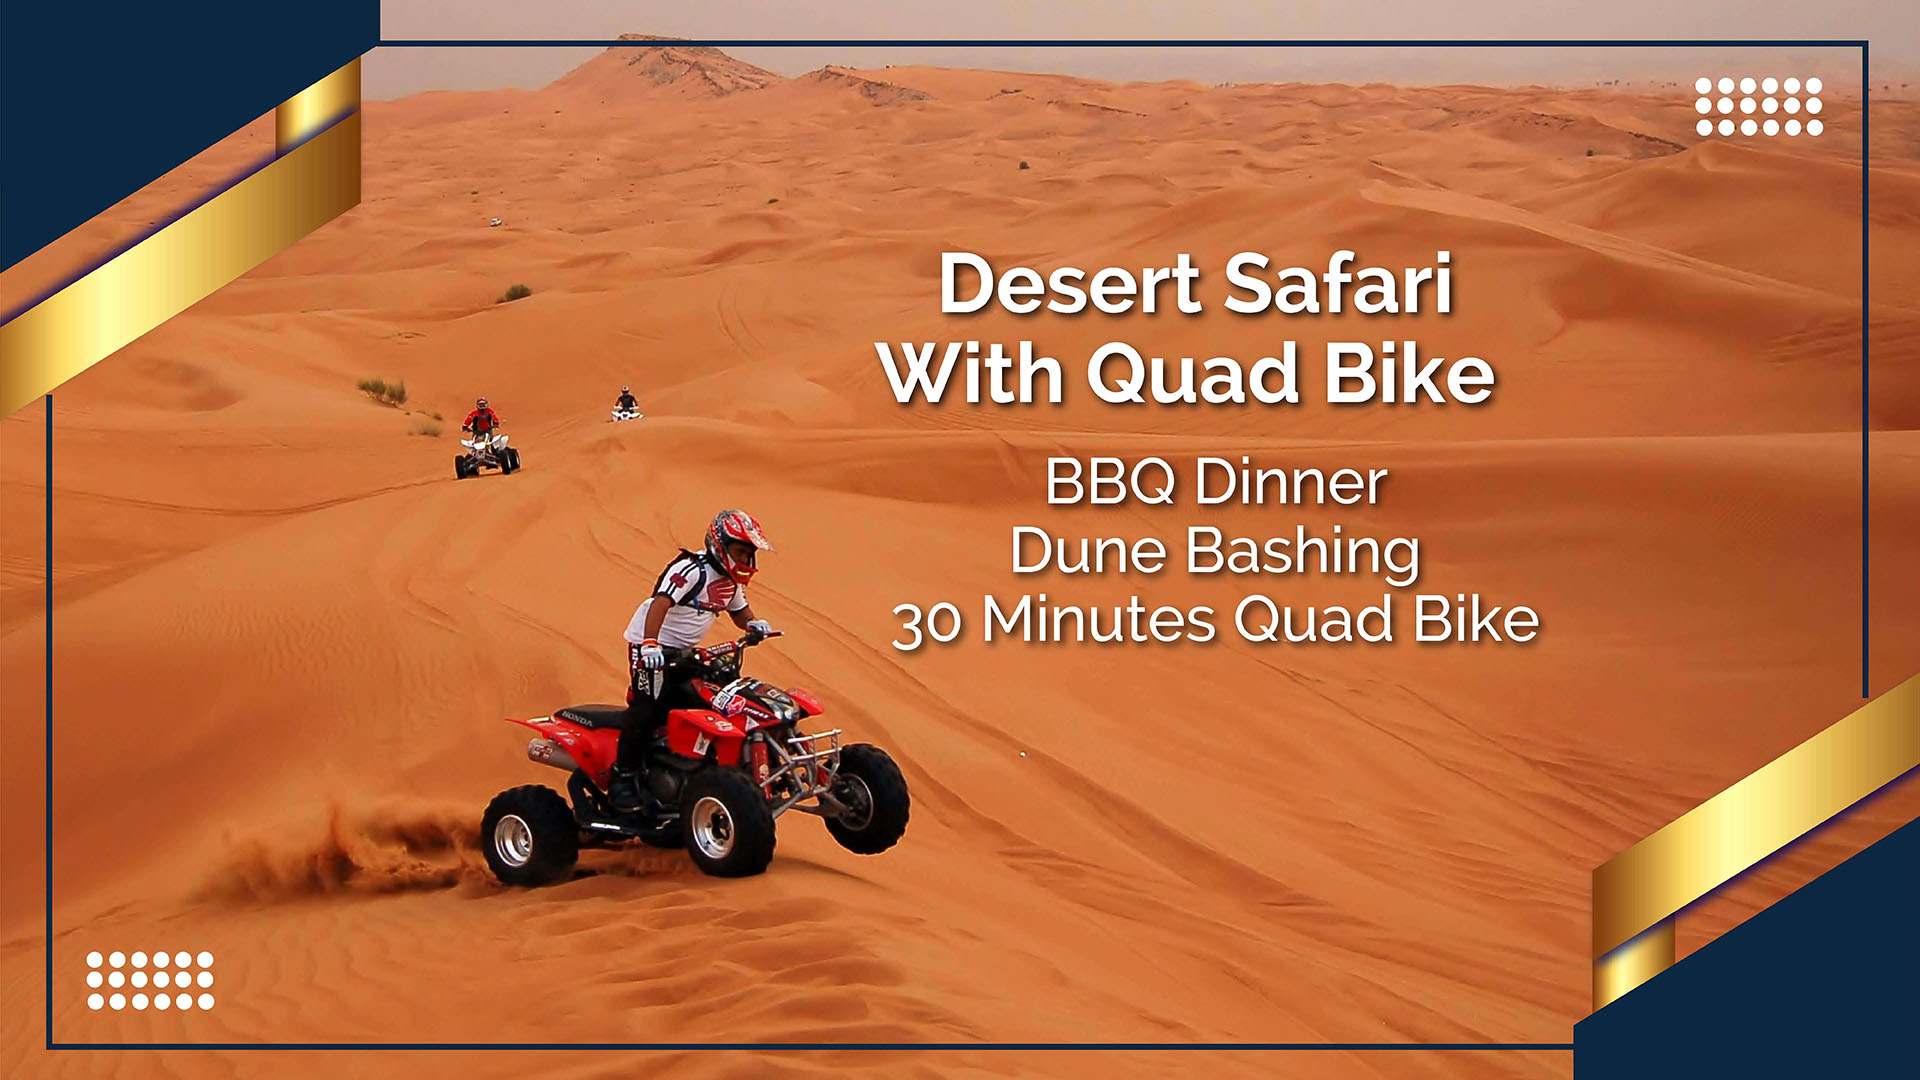 Desert Safari With Quad Bike in Red Dunes Desert